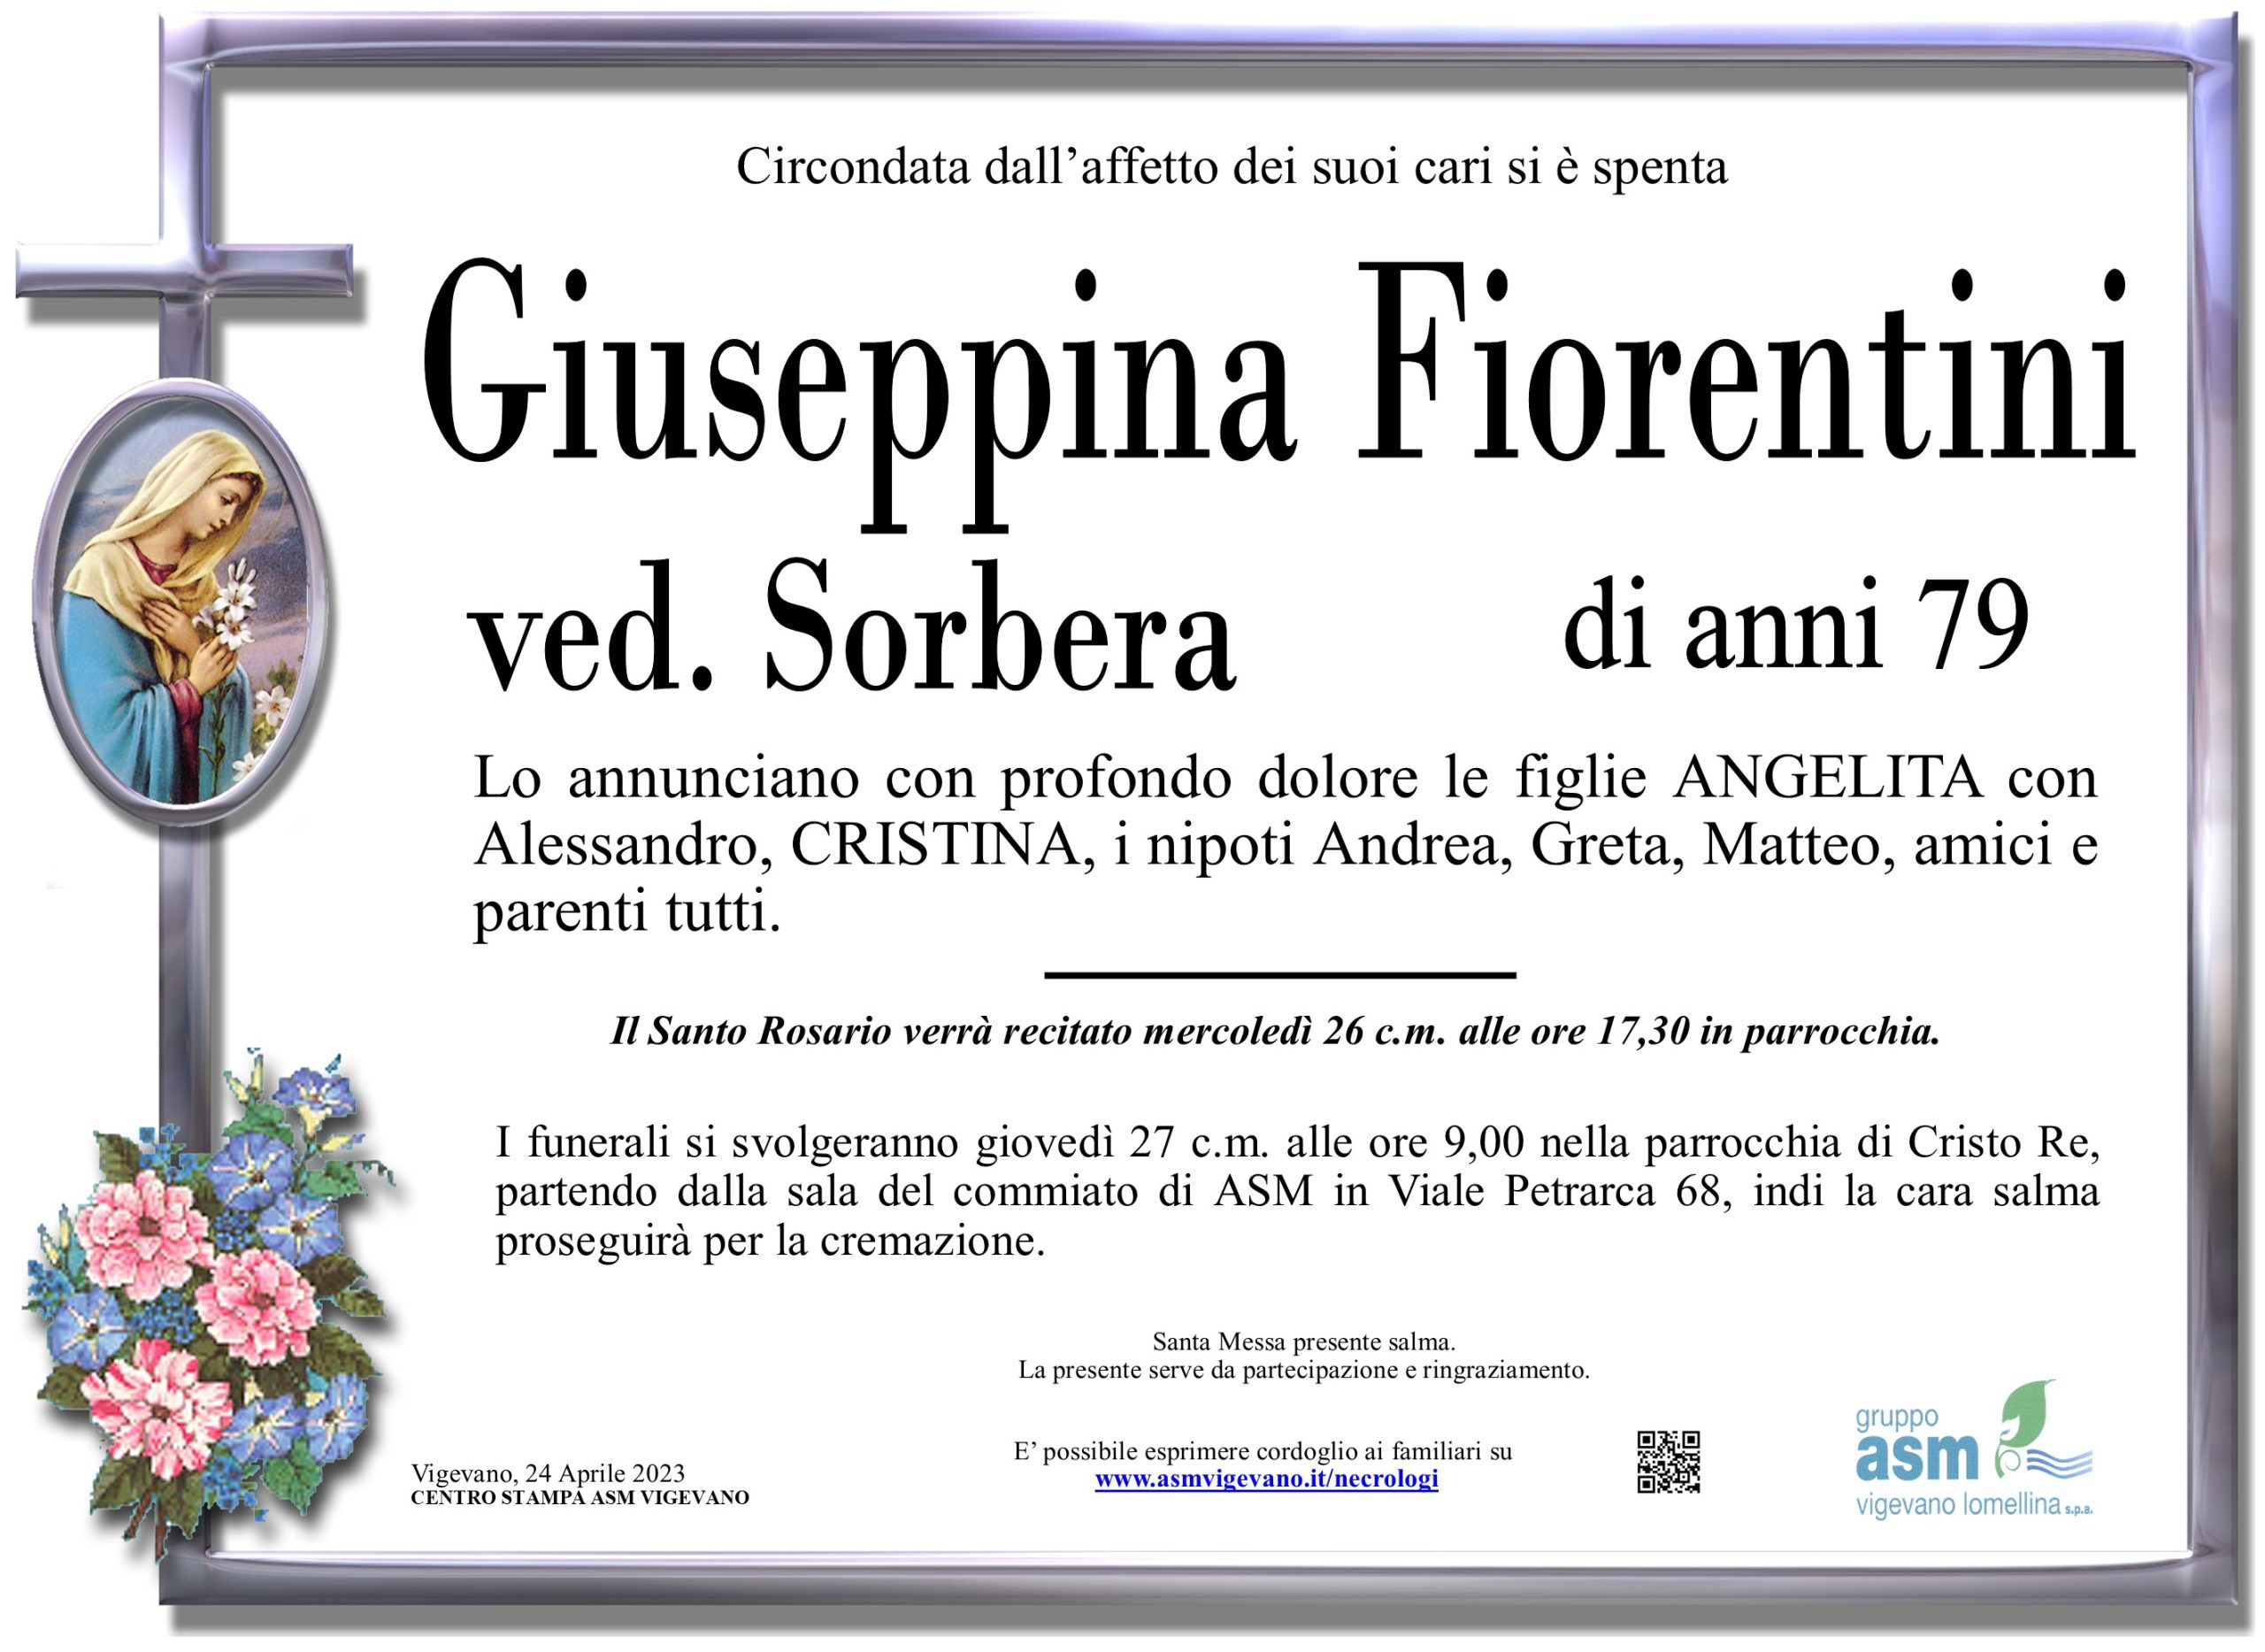 Giuseppina Fiorentini